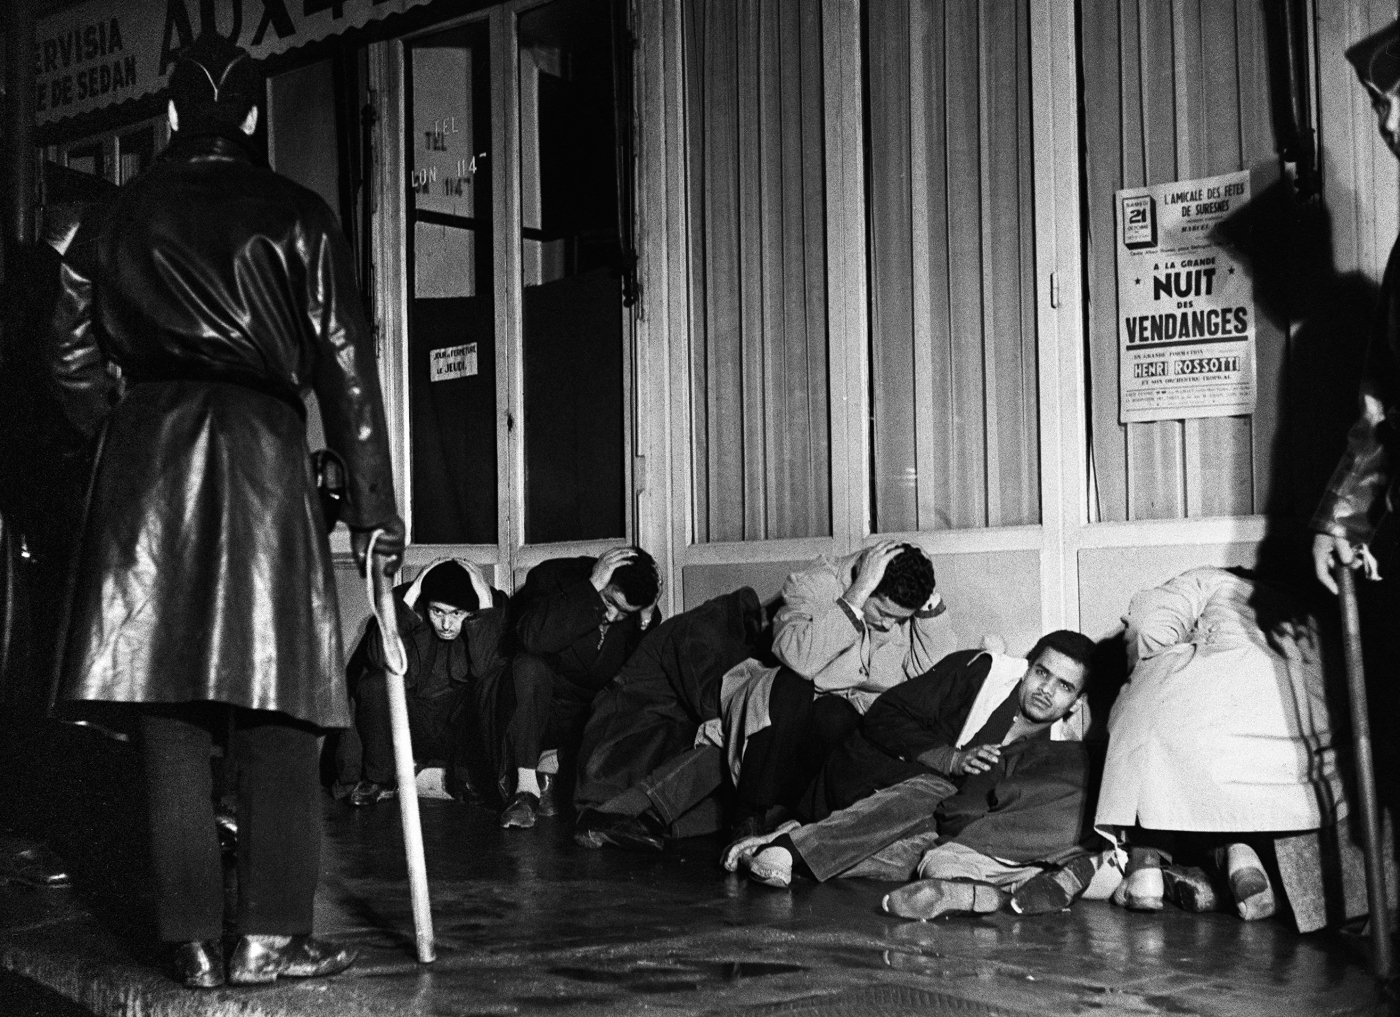 Des manifestants algériens appréhendés à Puteaux, à l’ouest de Paris, pendant la guerre d’Algérie, lors de la manifestation pacifique organisée à Paris le 17 octobre 1961 par la Fédération de France du FLN pour protester contre le couvre-feu imposé aux Français musulmans d’Algérie par le préfet de police Maurice Papon (AFP)